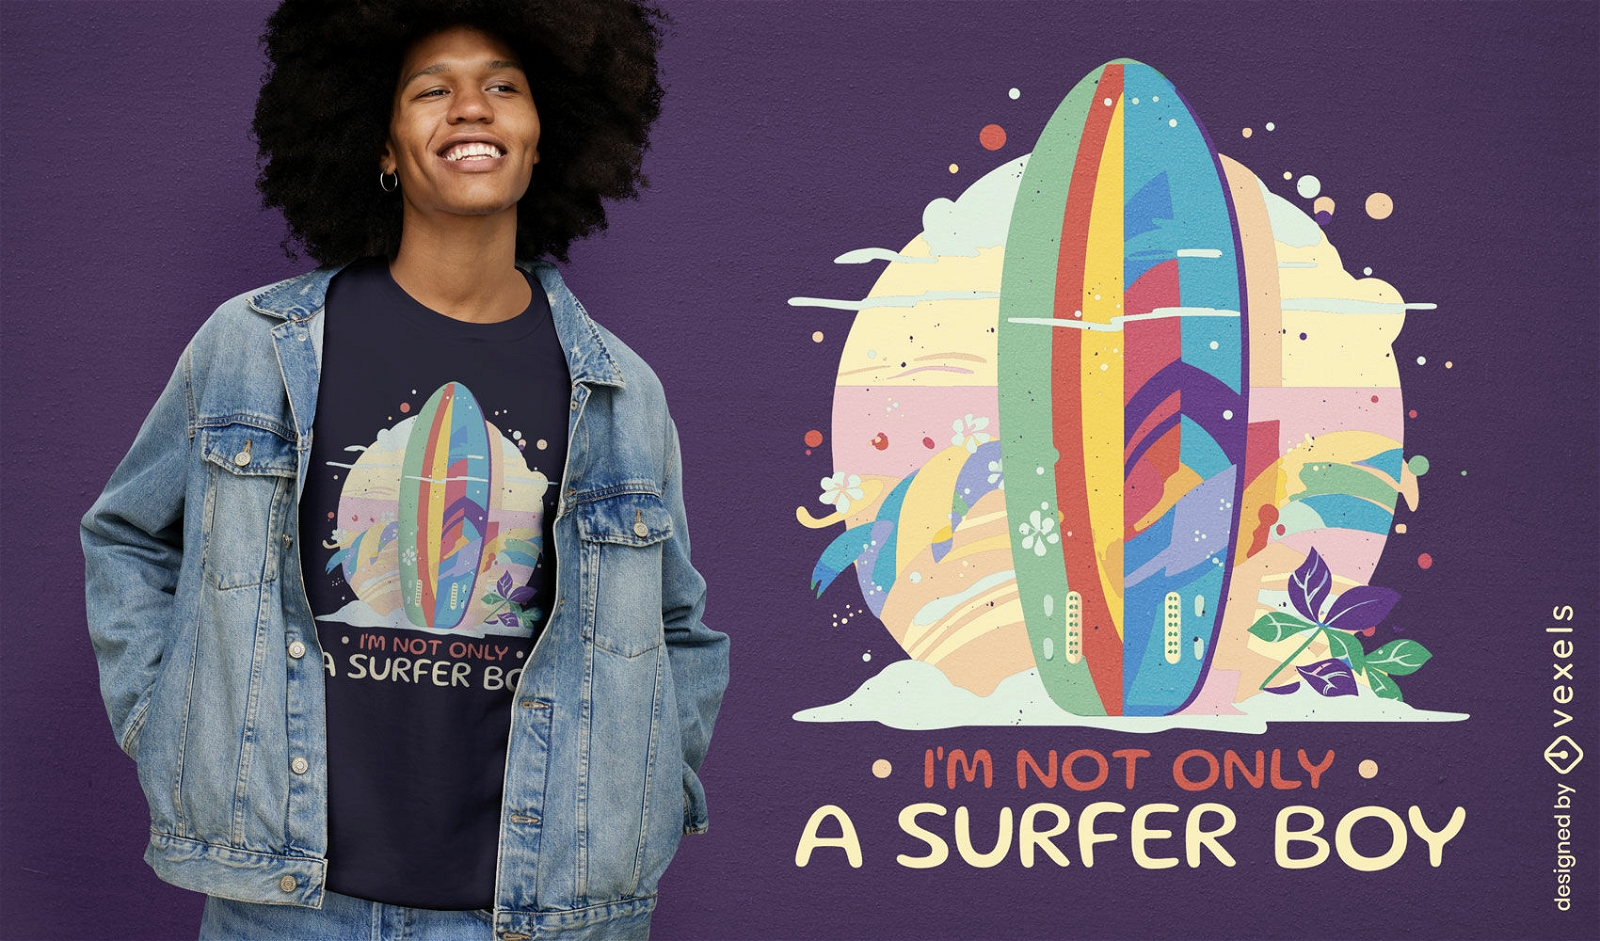 Not only a surfer boy t-shirt design